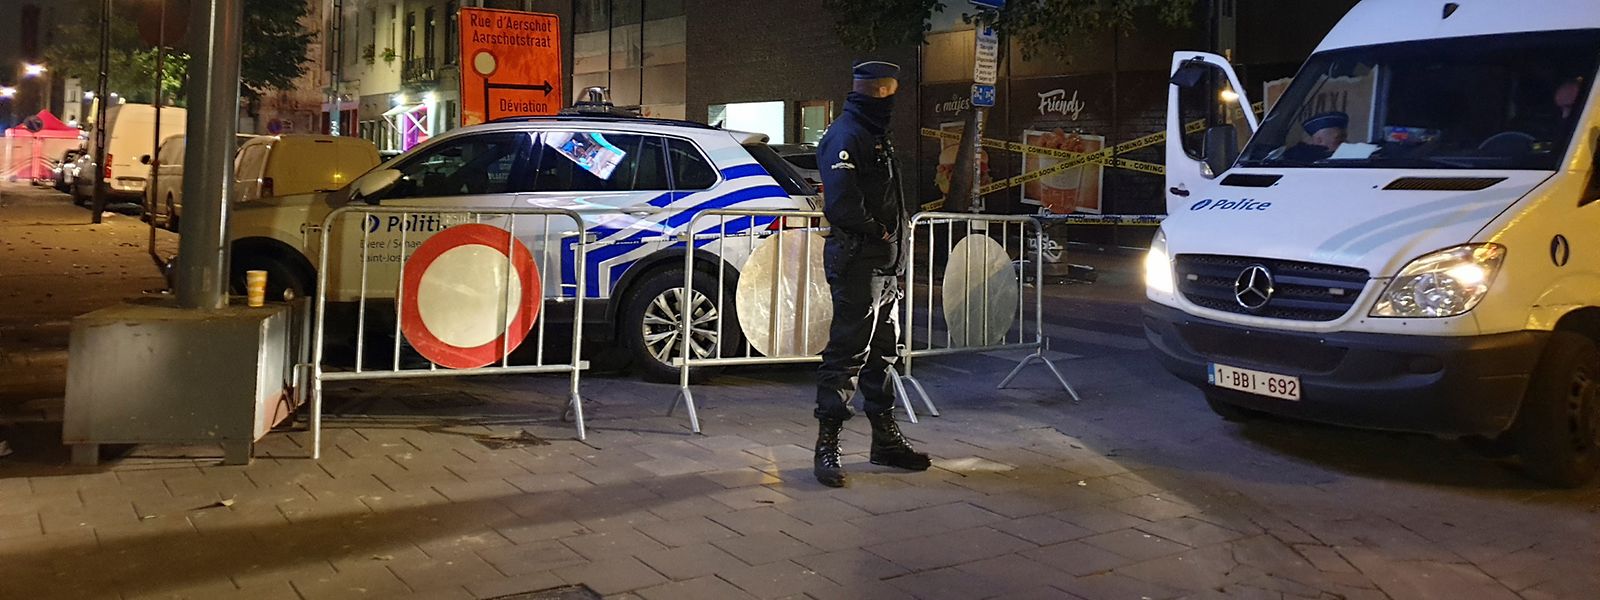 Ein belgischer Polizist im Brüsseler Stadtteil Scheerbeek. In der Nähe waren in der Nacht zwei Kollegen mit einem Messer attackiert worden.